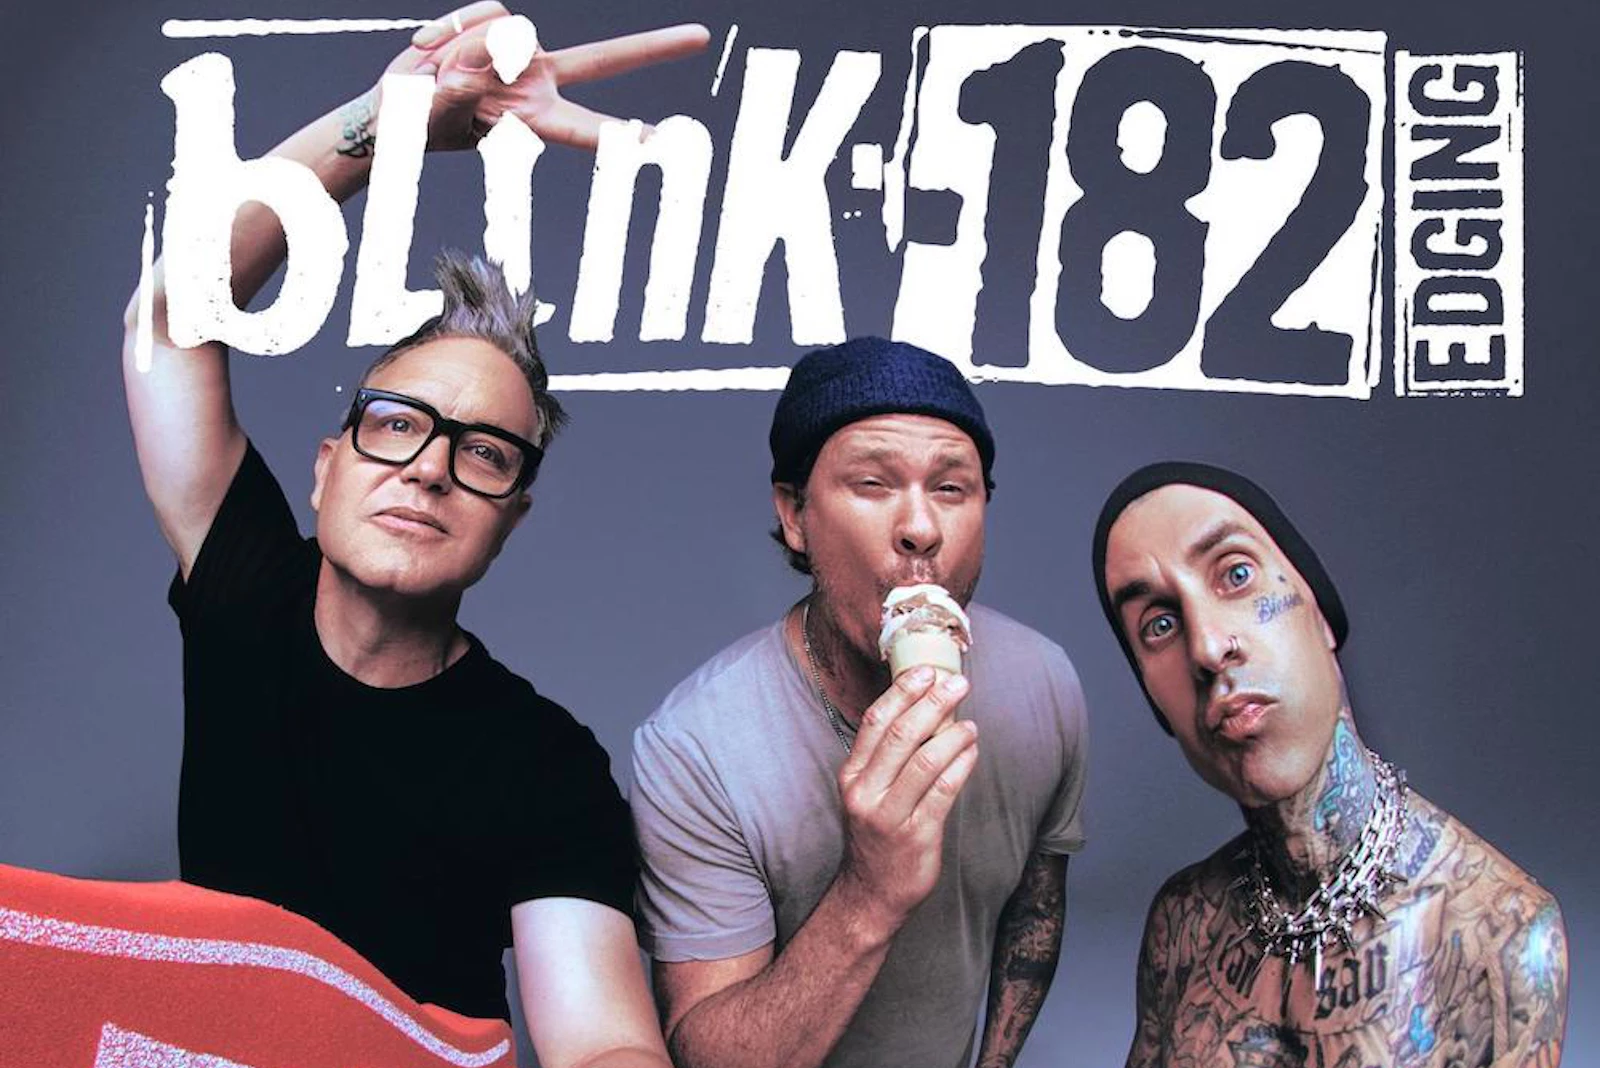 Listen to Blink-182s New Single Edging